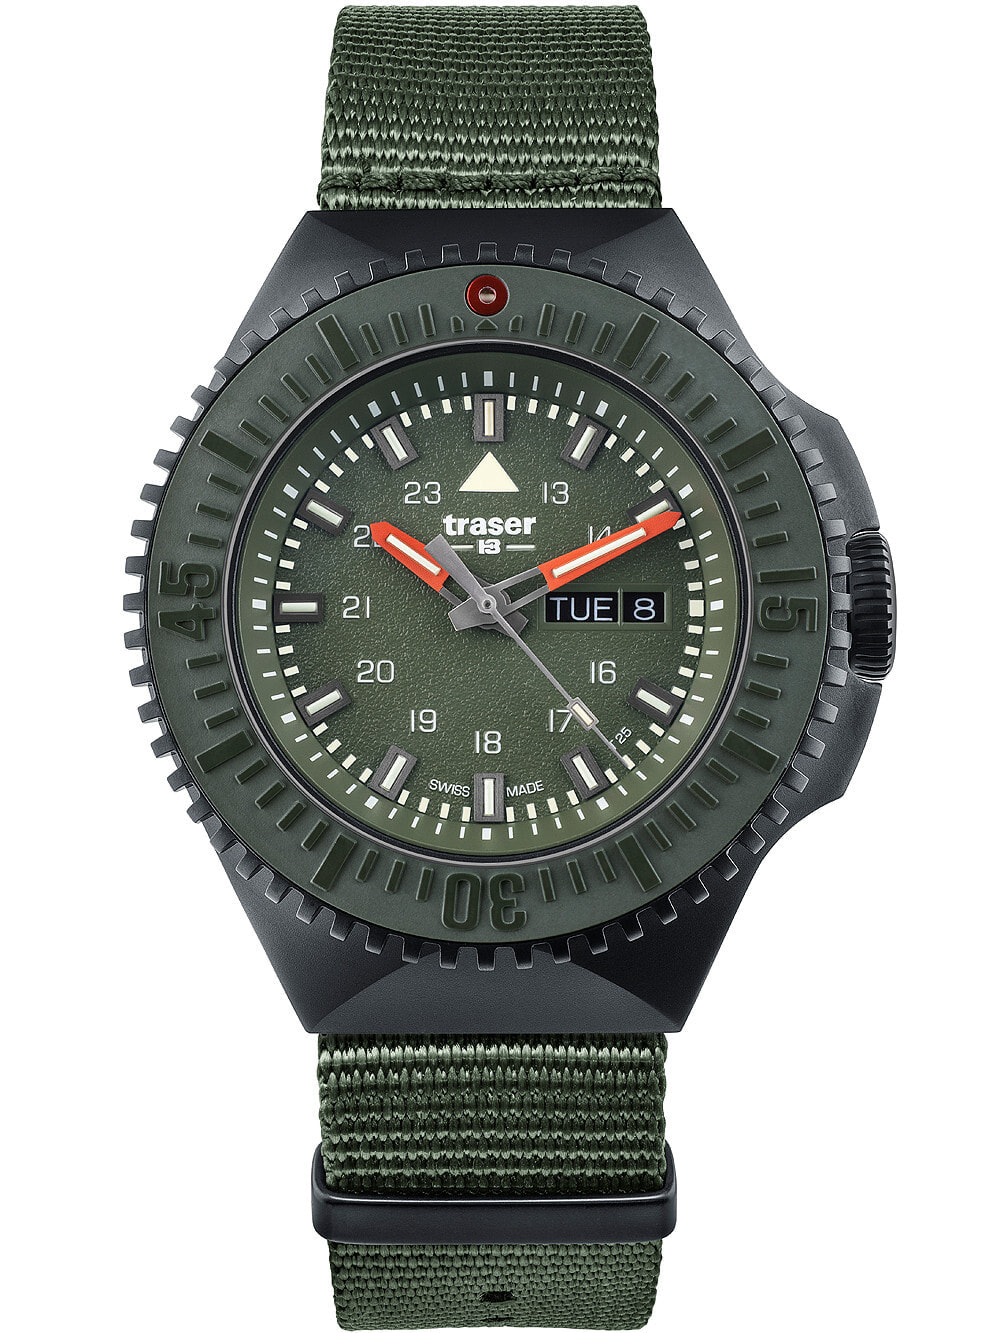 Мужские наручные часы с зеленым текстильным ремешком  Traser H3 109858 P69 Black-Stealth Green 46mm 20ATM